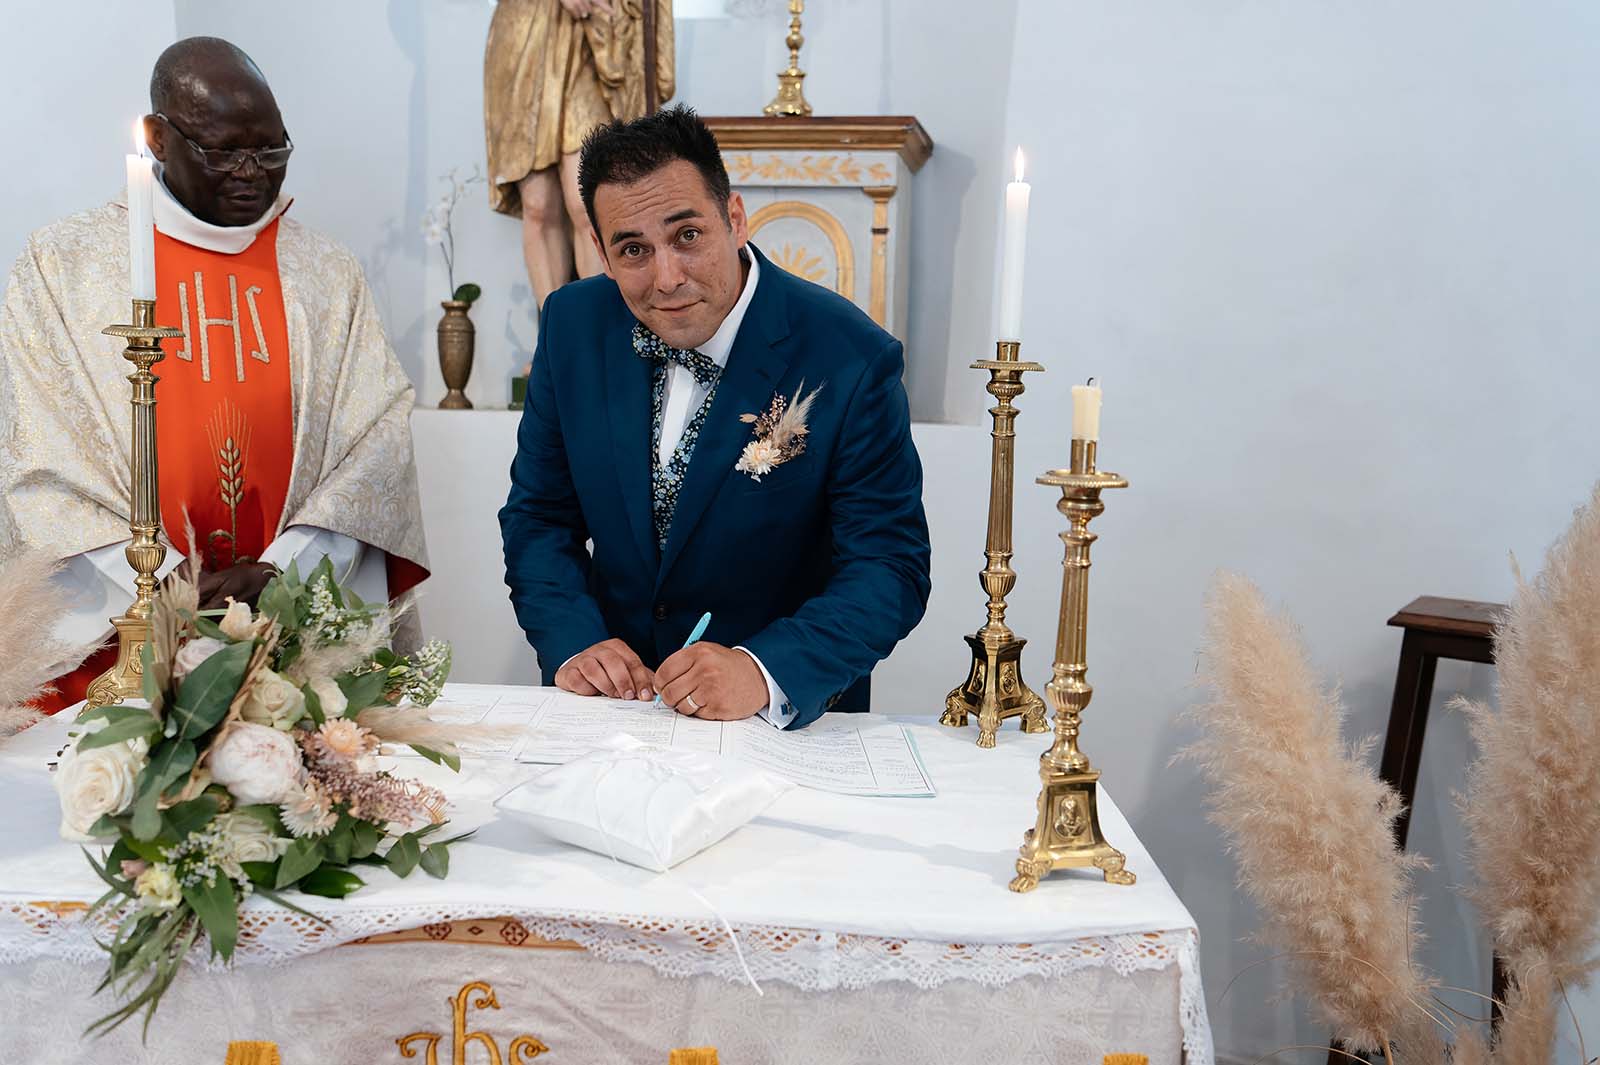 marié signant le registre de mariage à l'église